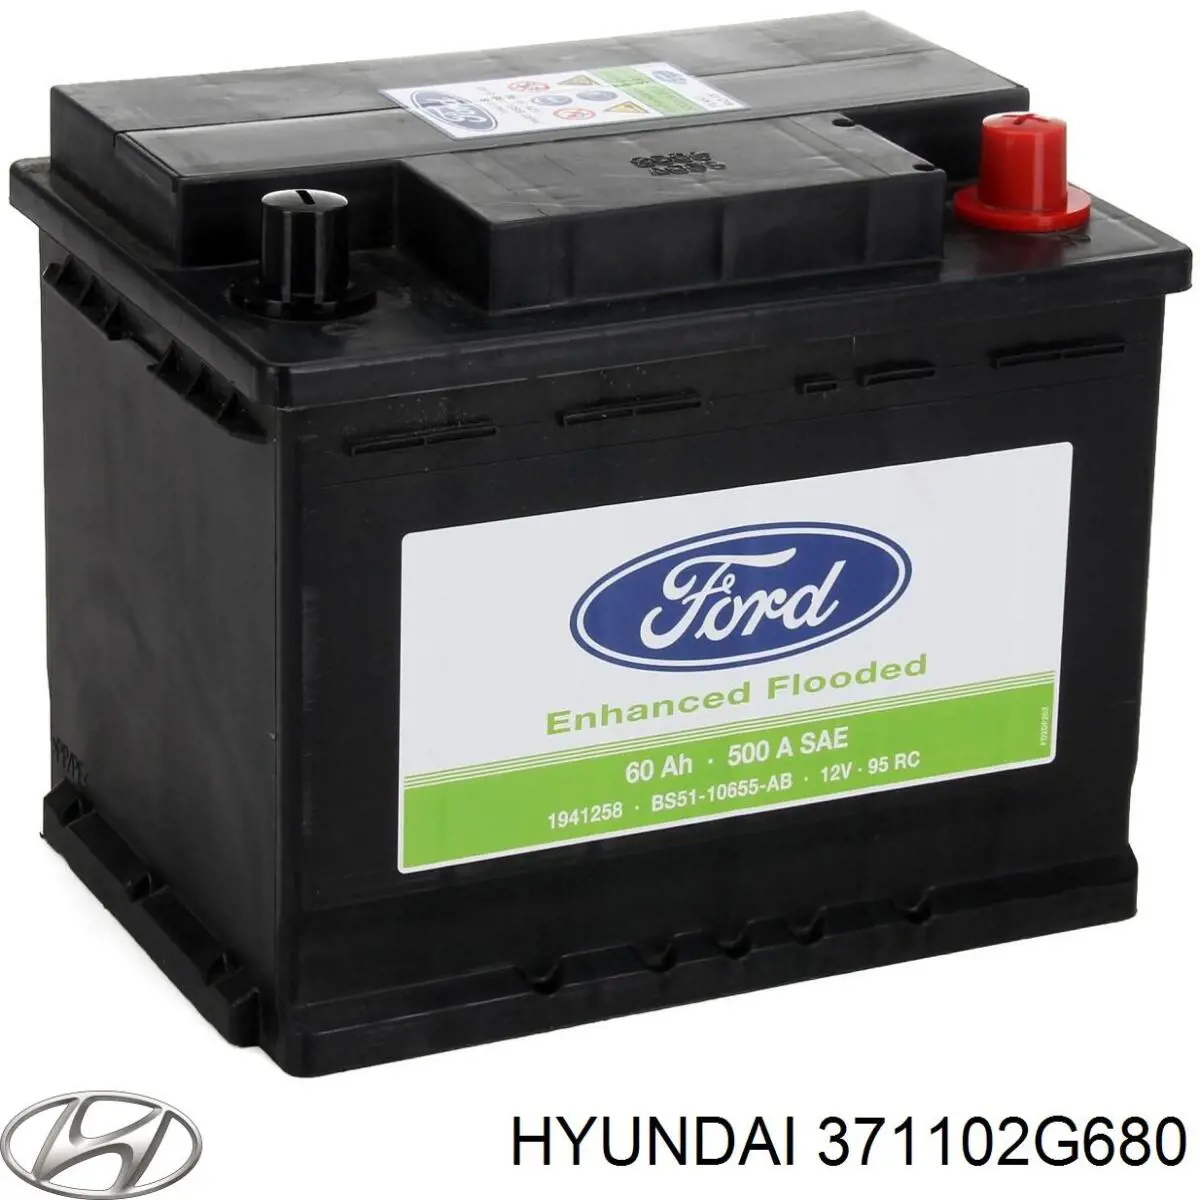 Batería de Arranque Hyundai/Kia (371102G680)